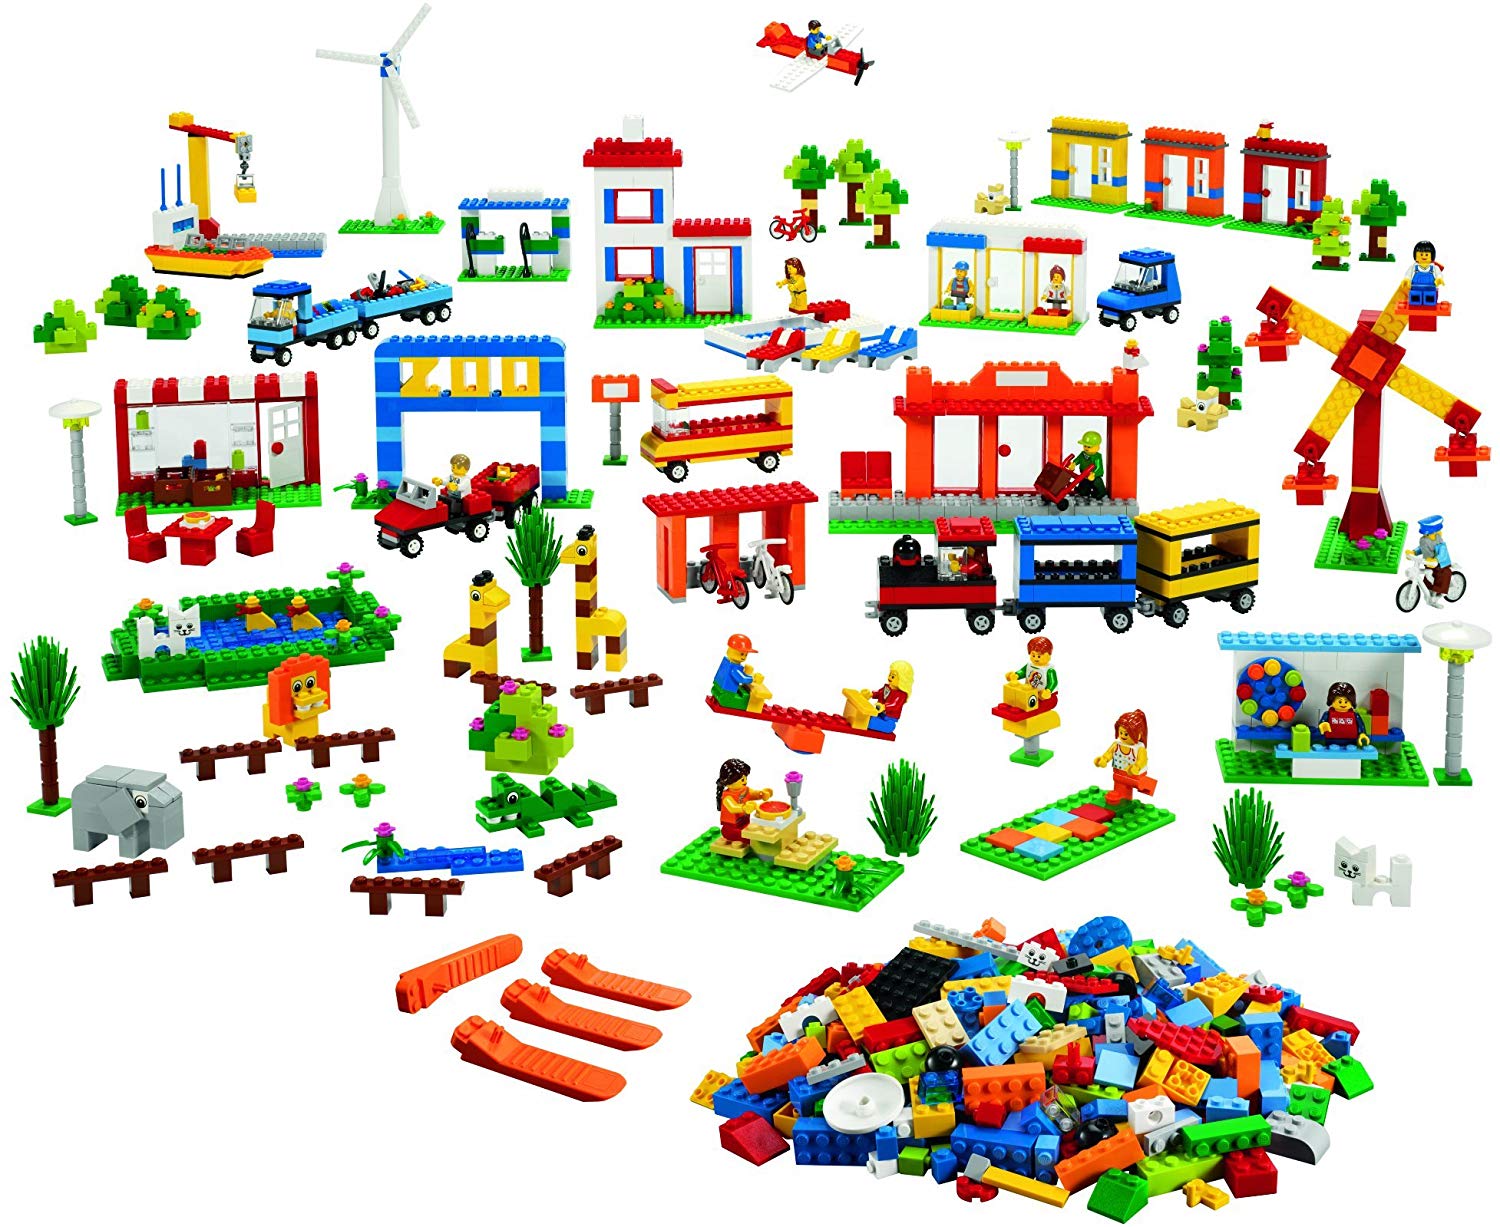 LEGO® Education Community Starter Set 9389